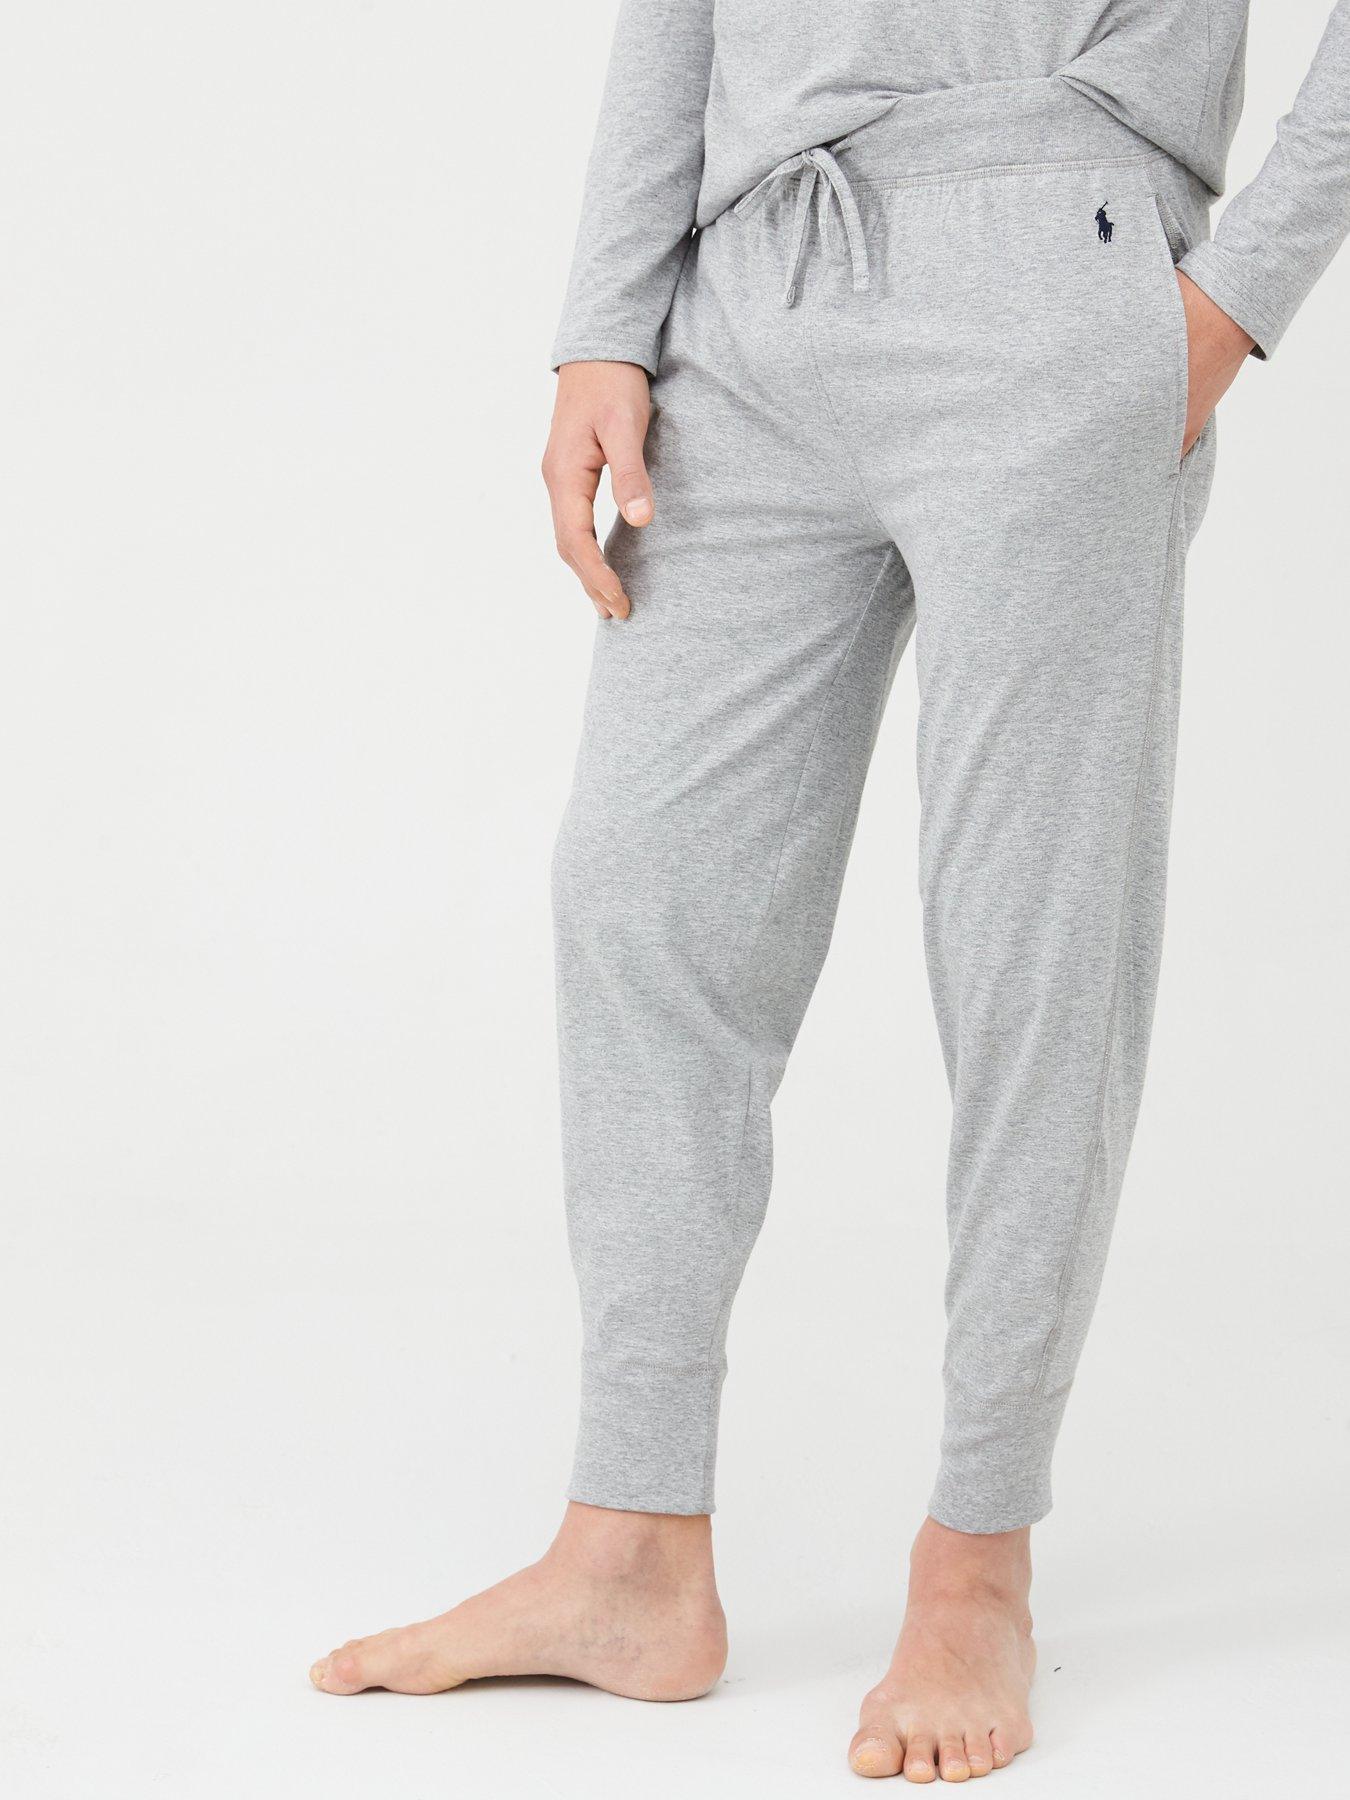 Polo Ralph Lauren Lightweight Cuffed Lounge Pants - Grey 